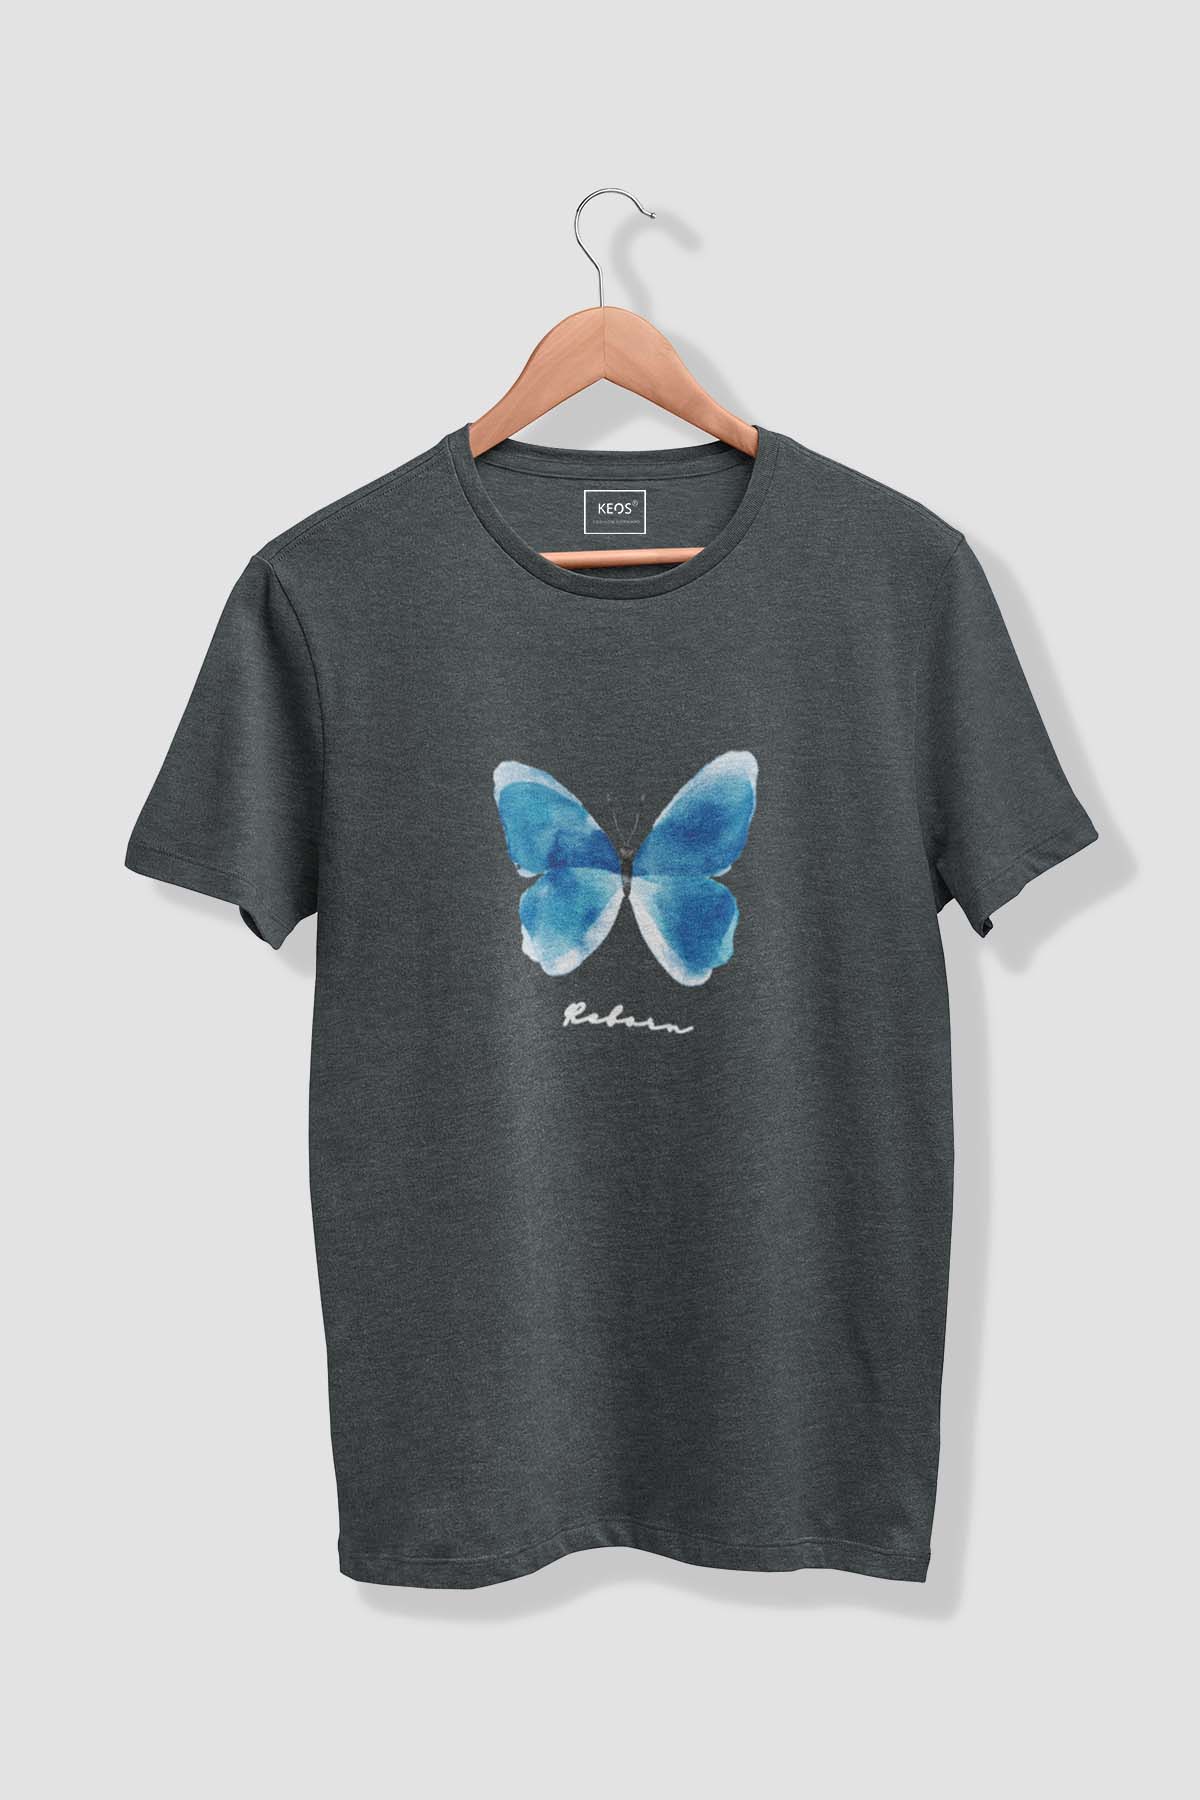 Reborn - Melange Cotton T-shirt - keos.life